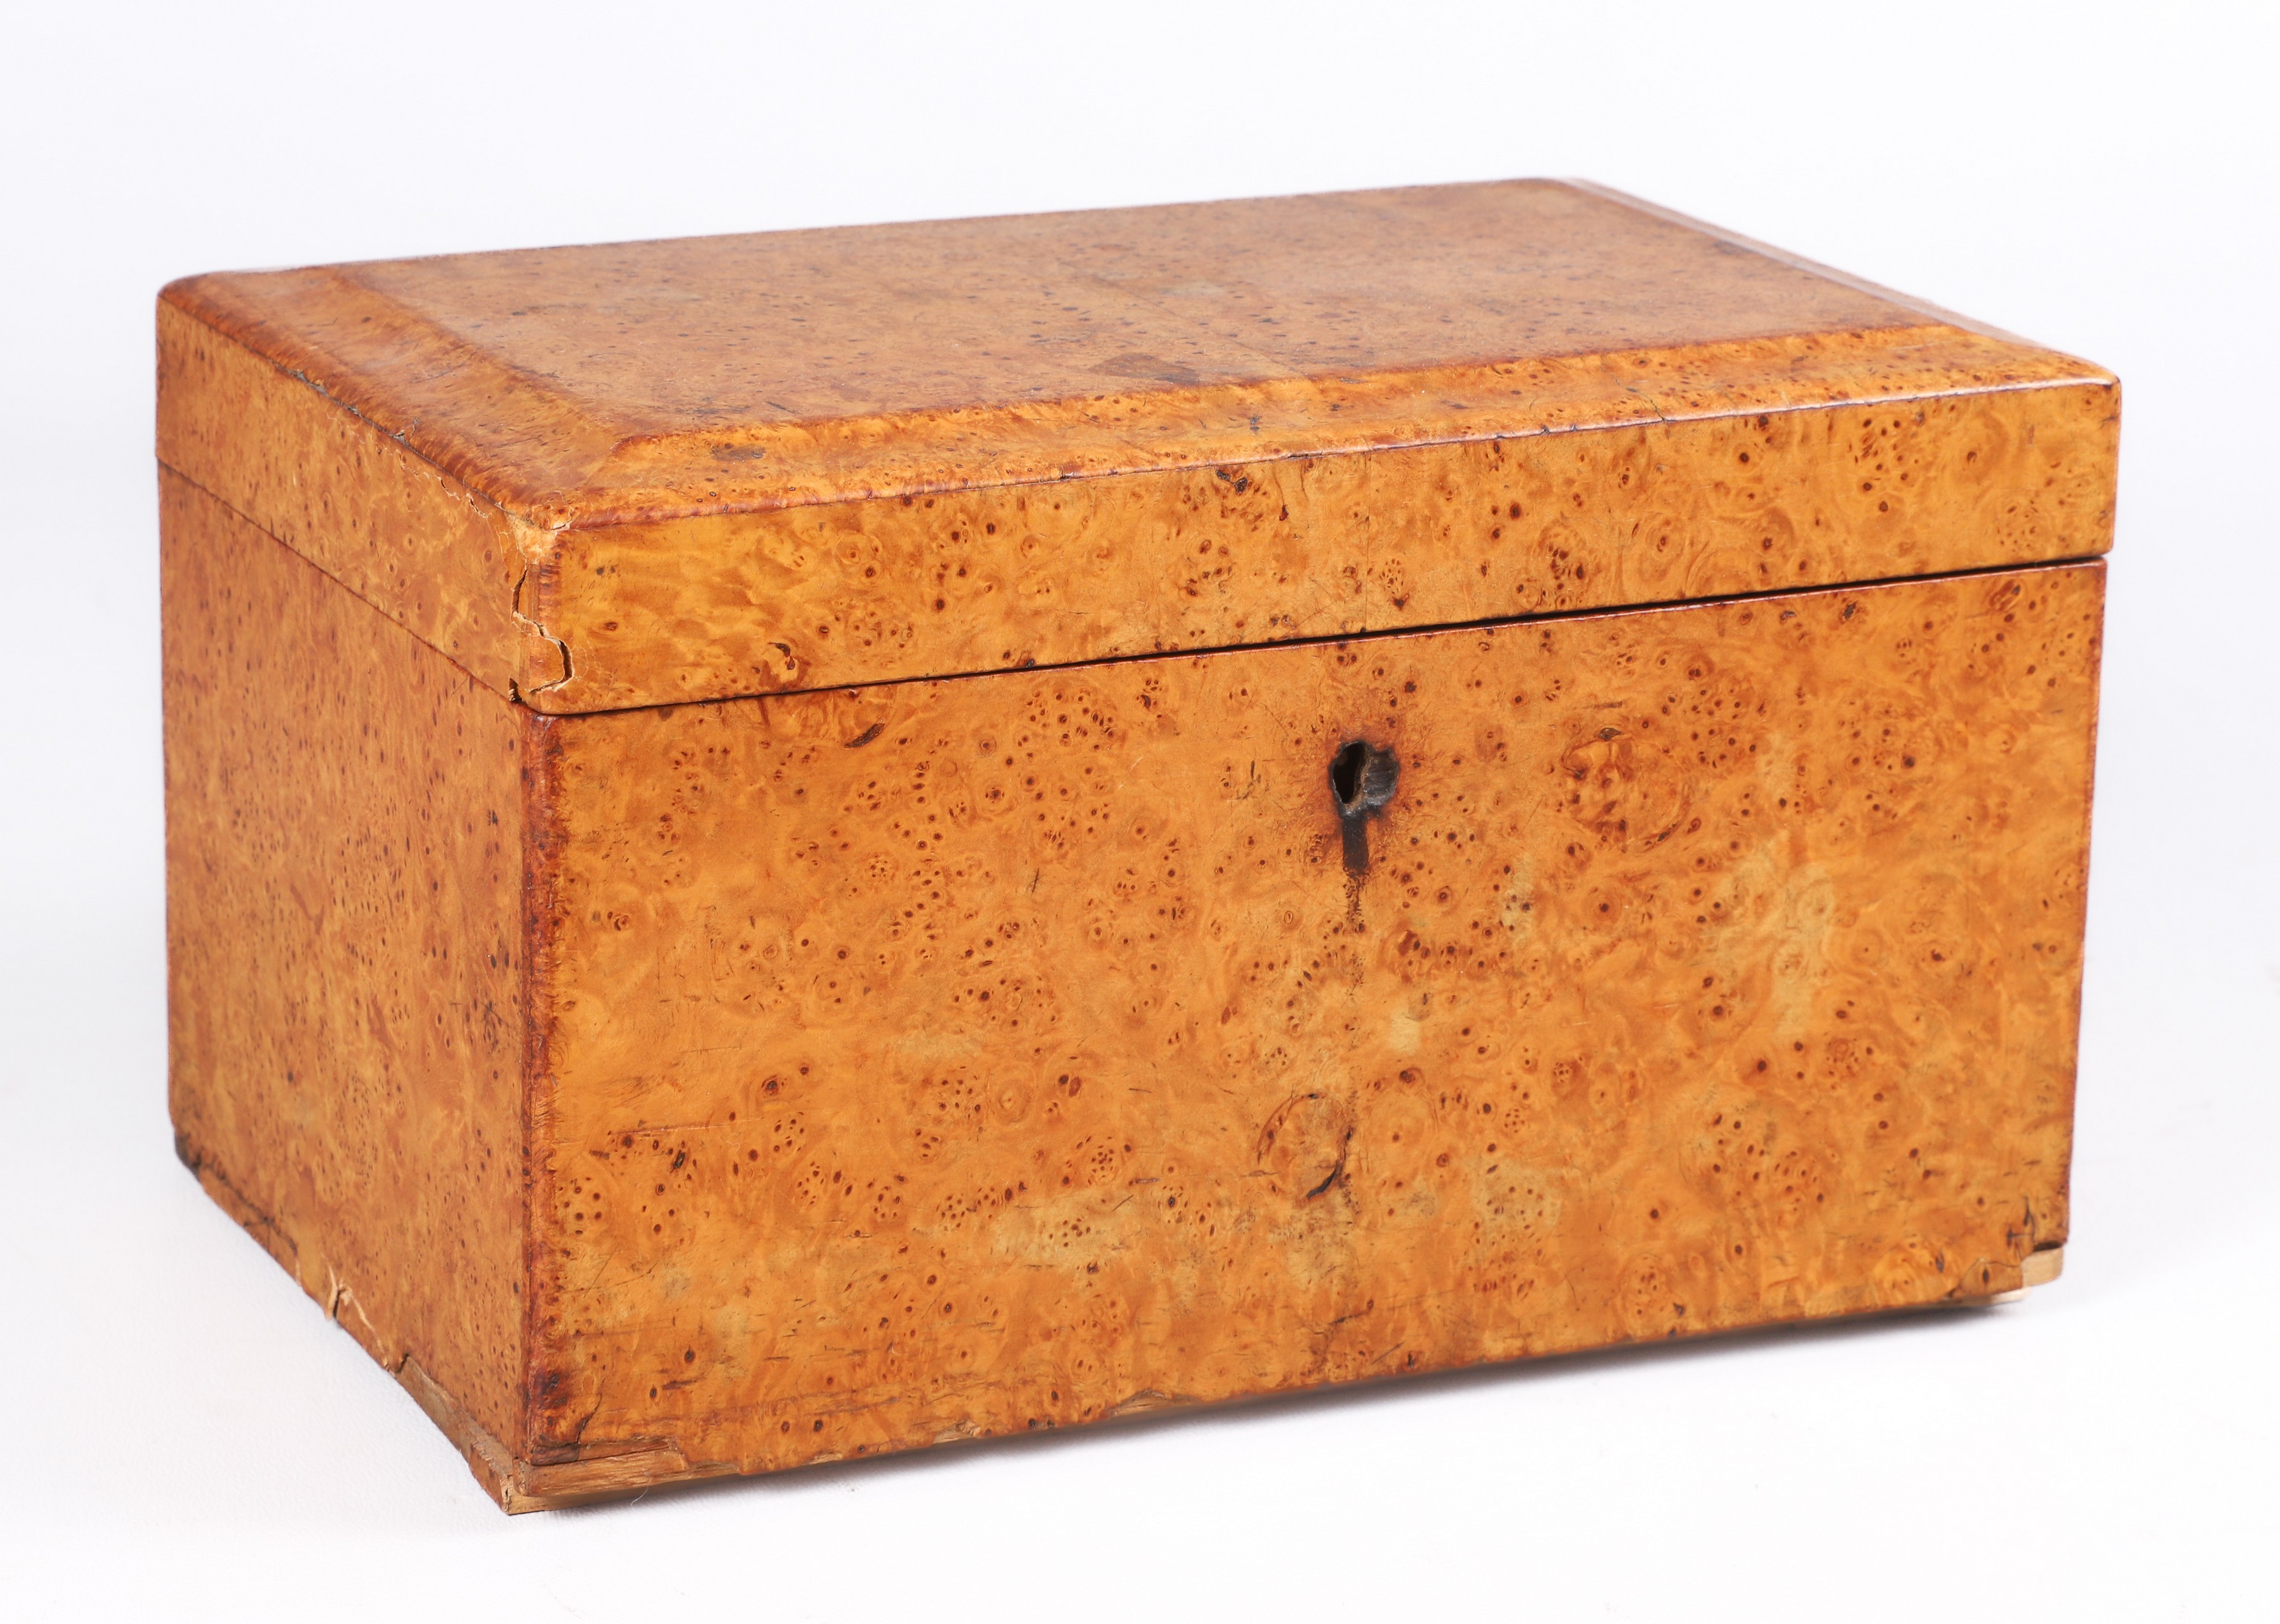 Burl wood tea box, two removable